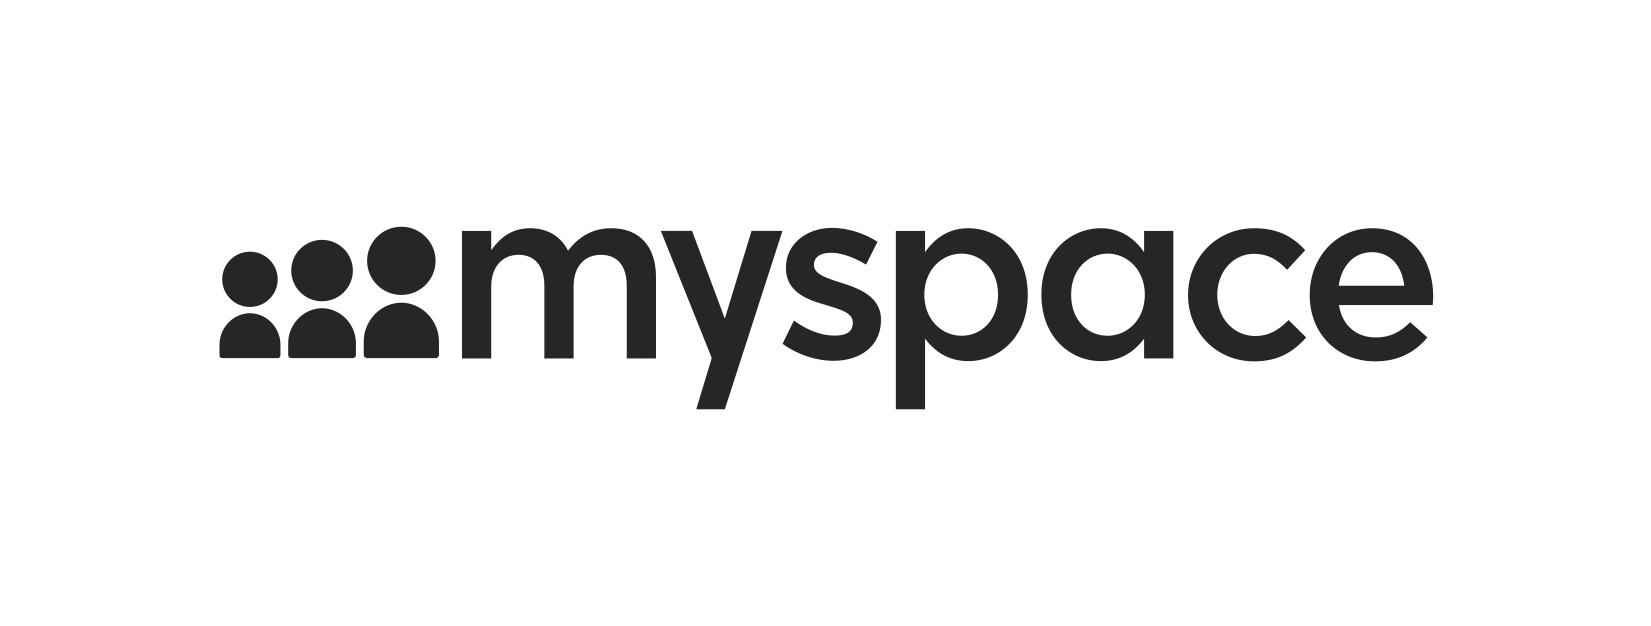 Myspace App Logo - Myspace Announces Launch of New Platform Across Desktop and Mobile